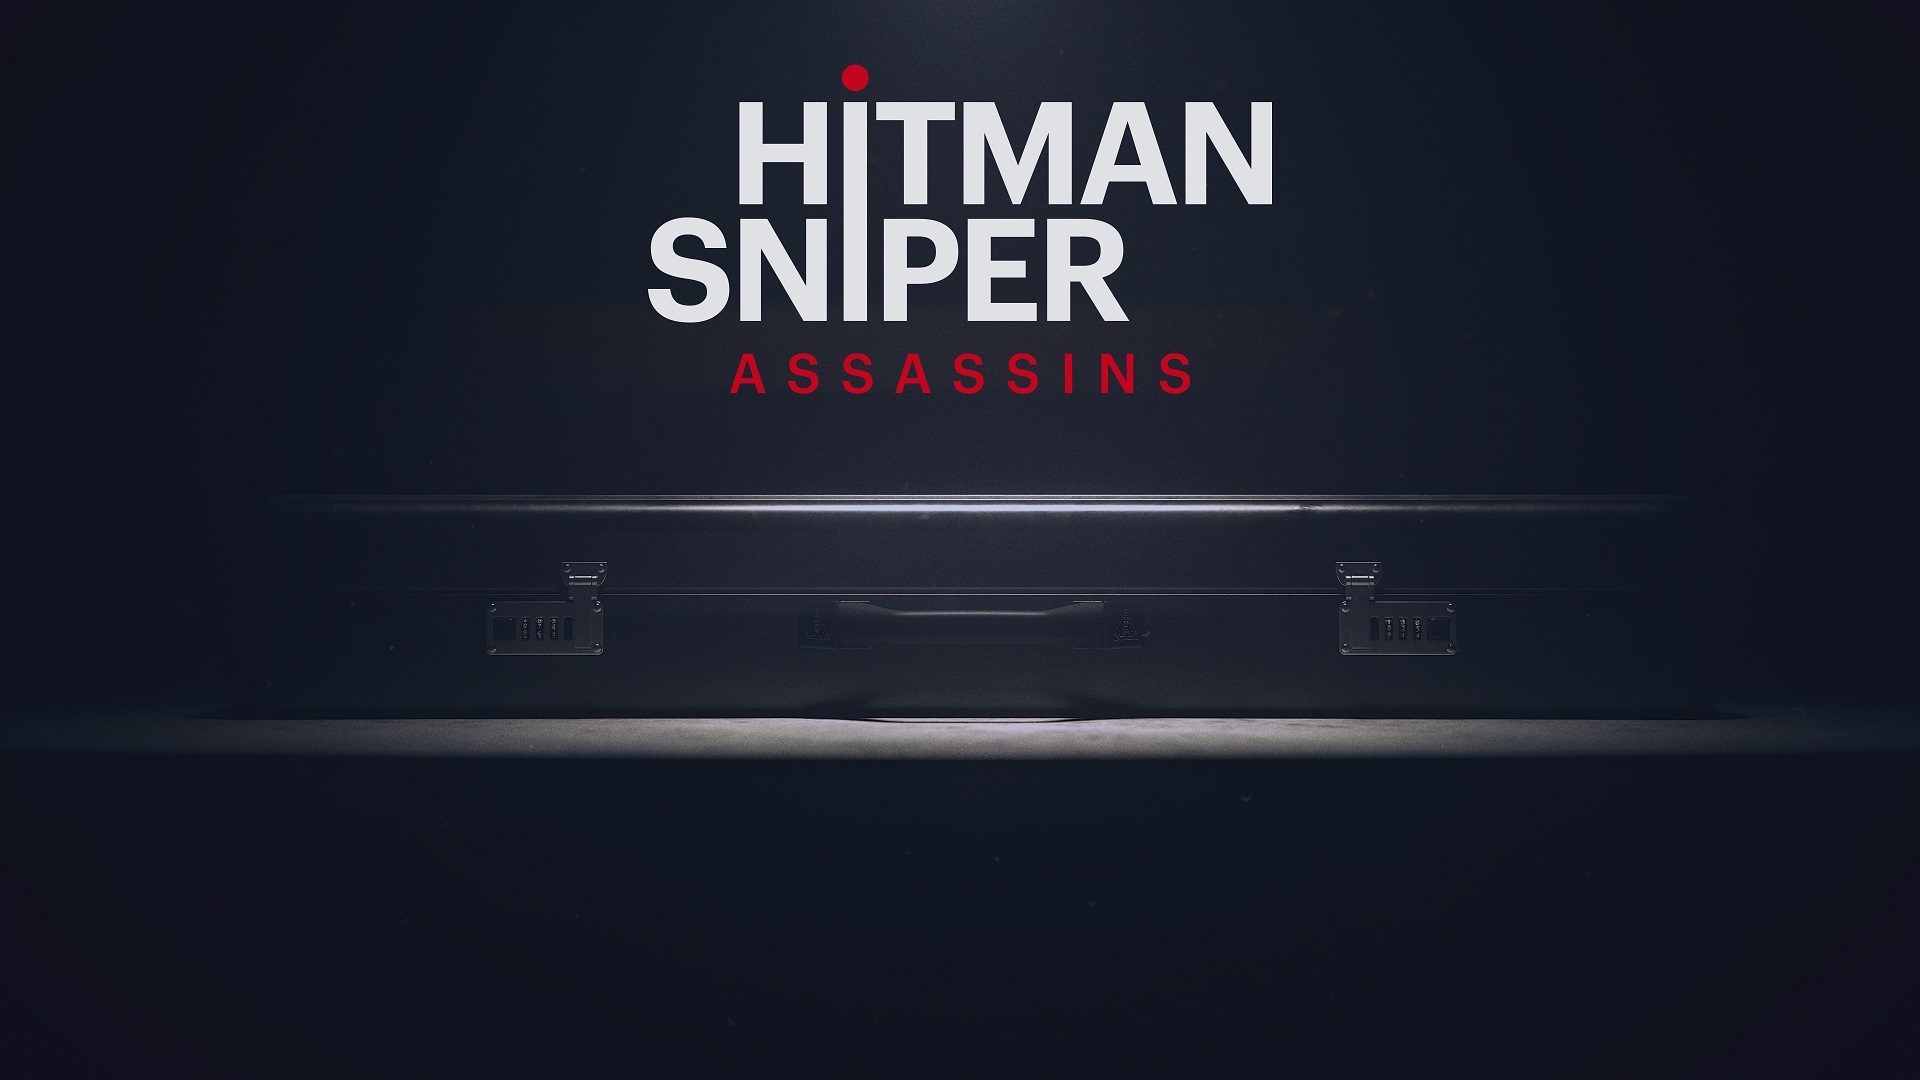 Project Hitman Sniper Assassins 03 18 21 ၁